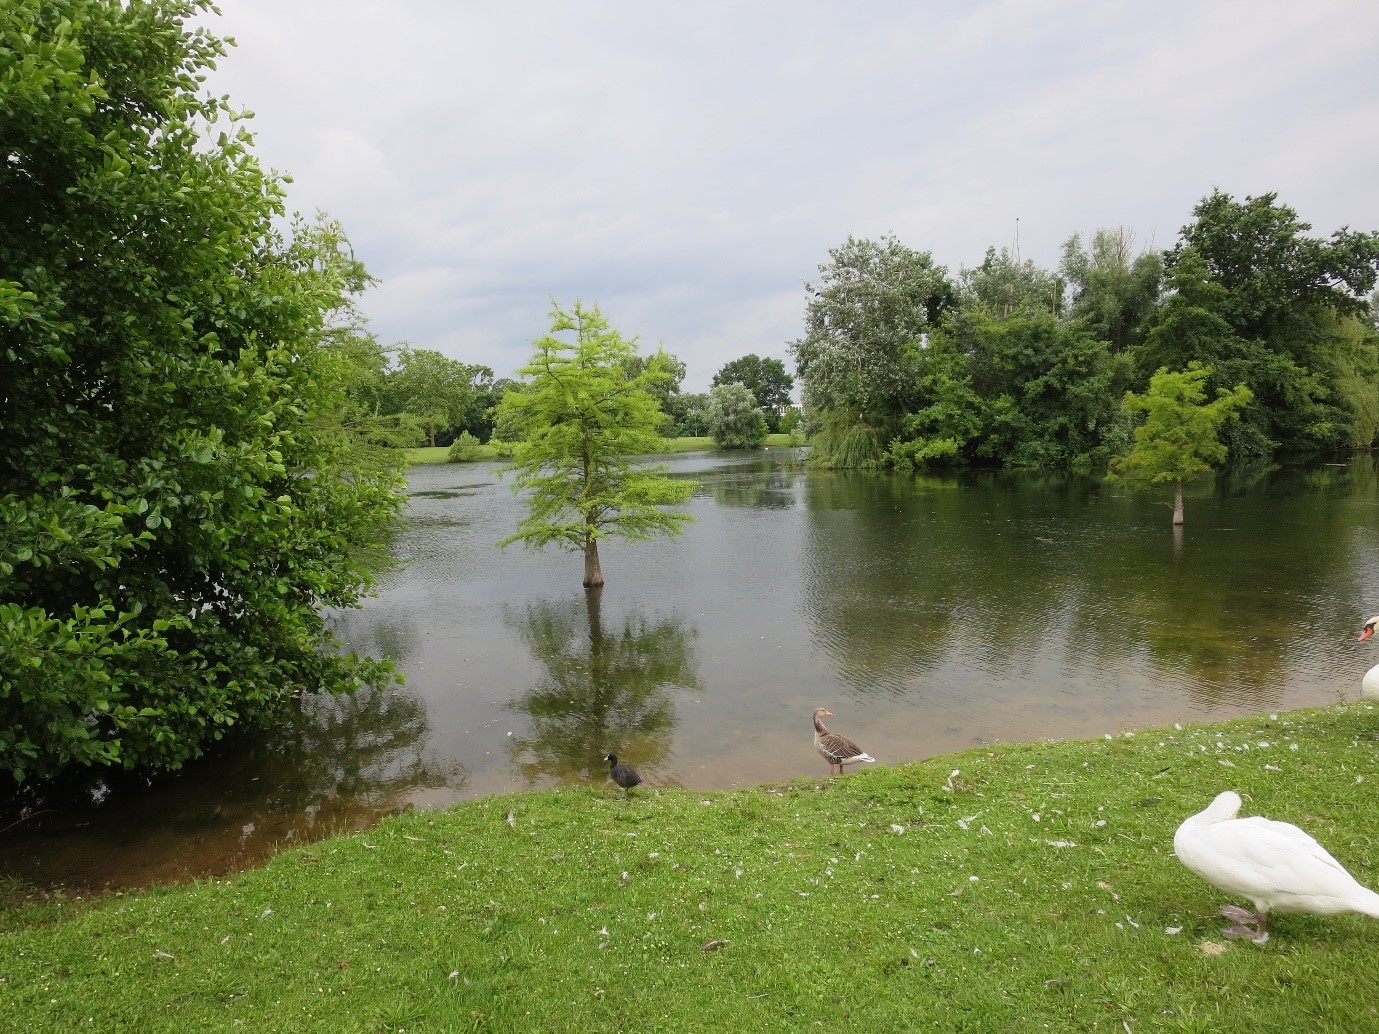 Routinen im Alltag - Ansicht eines Teichs mit Wasservögeln